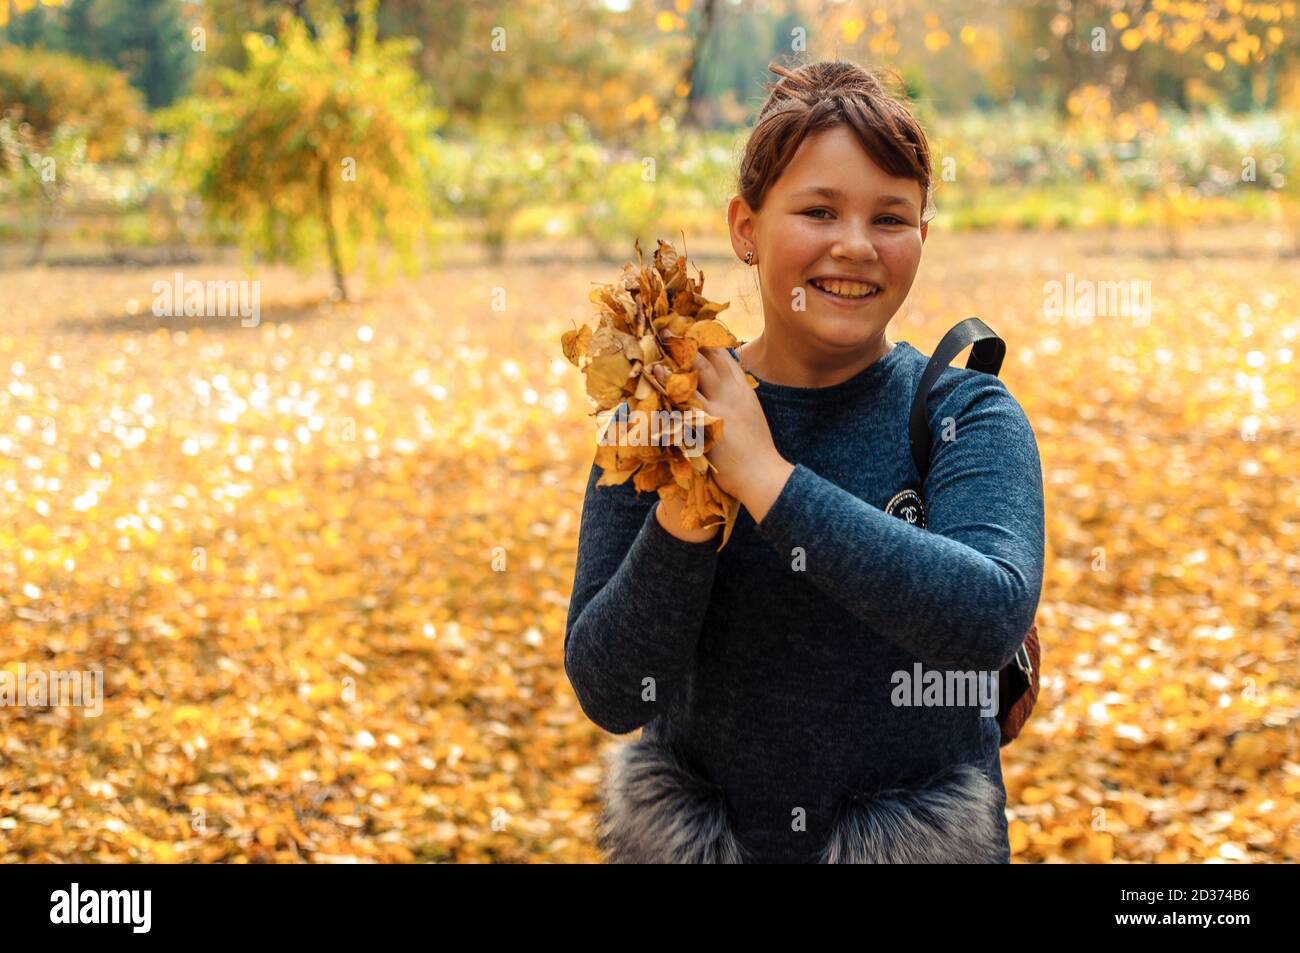 bambino felice che gioca con le foglie in autunno nella foresta. Ragazza che getta foglie asciutte in macchina fotografica. Attività all'aperto stagionali con i bambini. Cattura Foto Stock